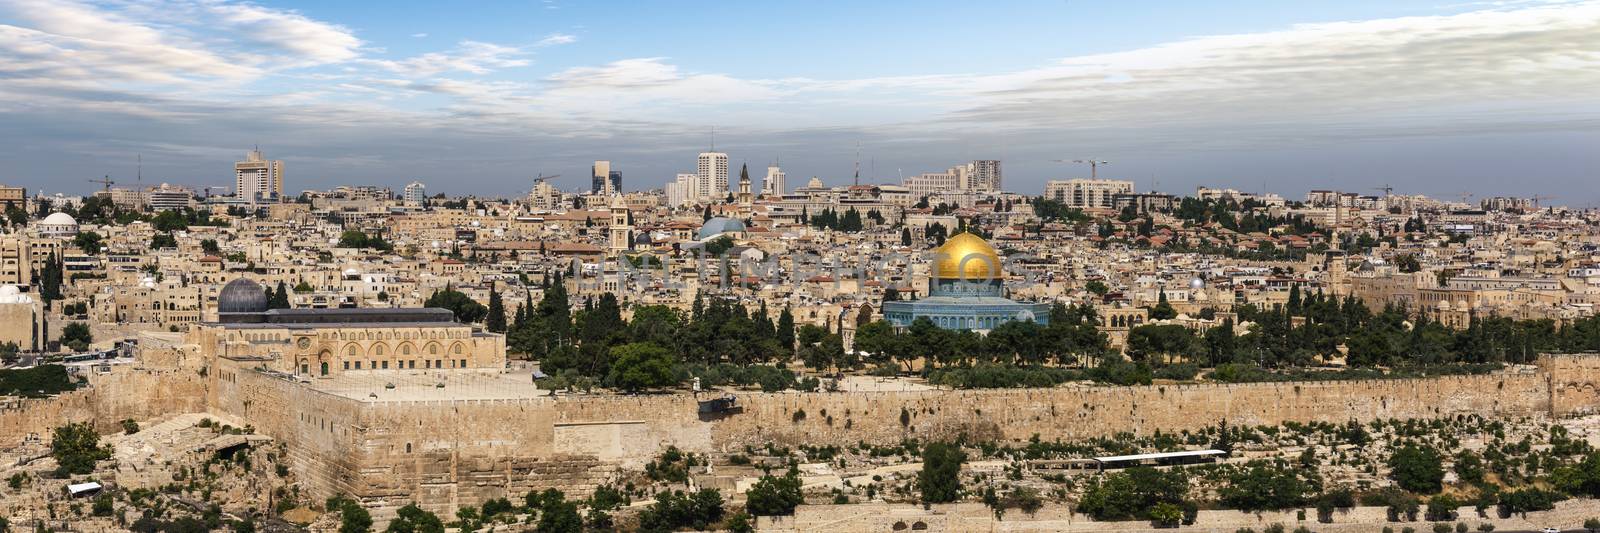 Jerusalem city in Israel by ventdusud